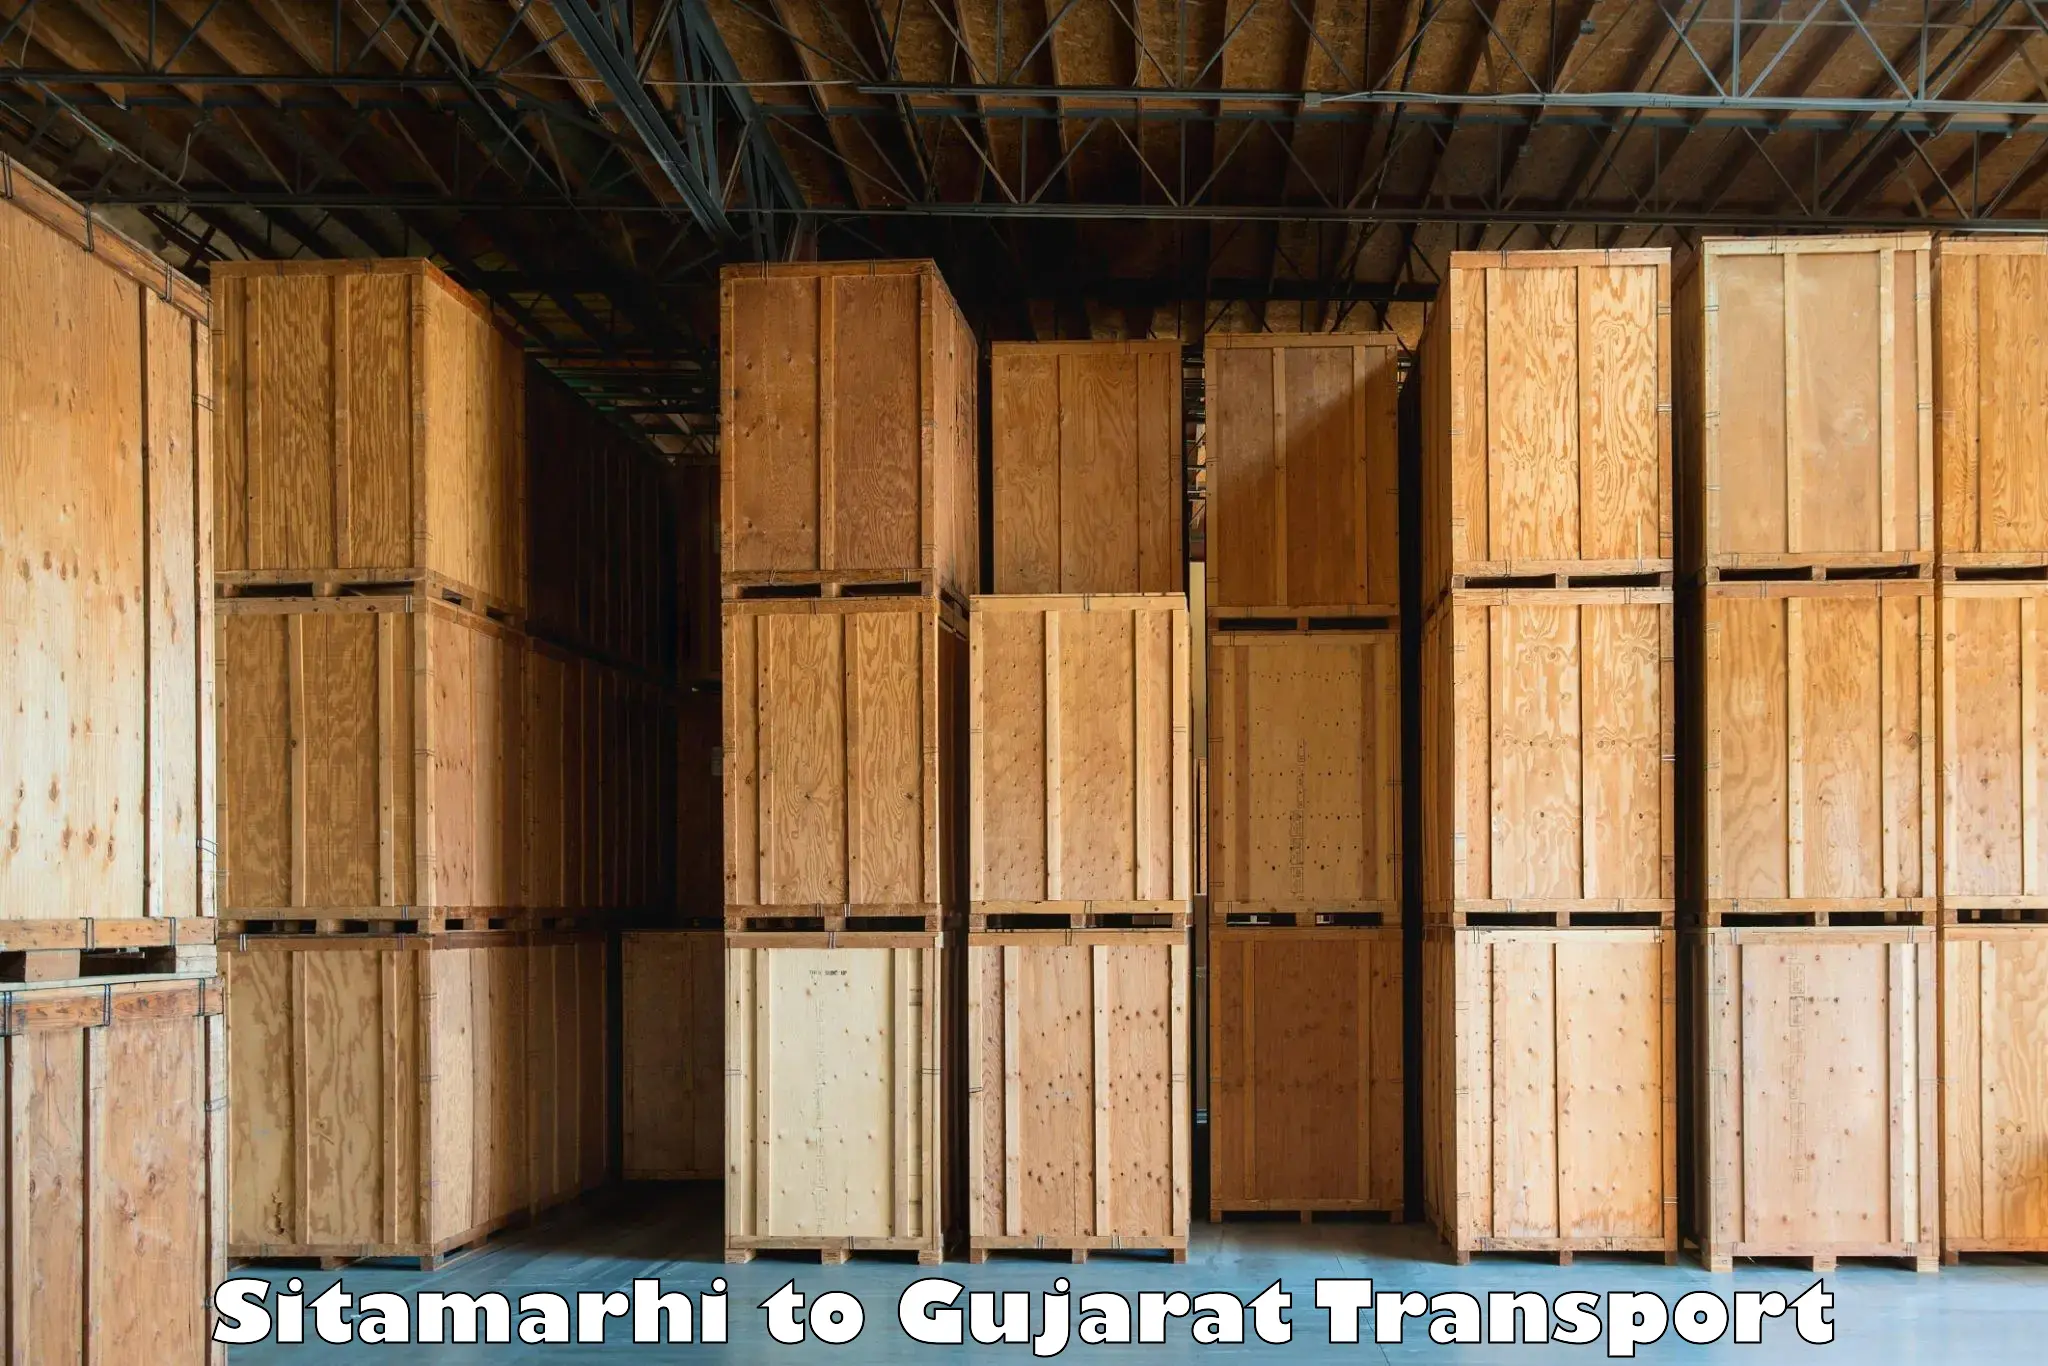 Interstate transport services Sitamarhi to Bhanvad